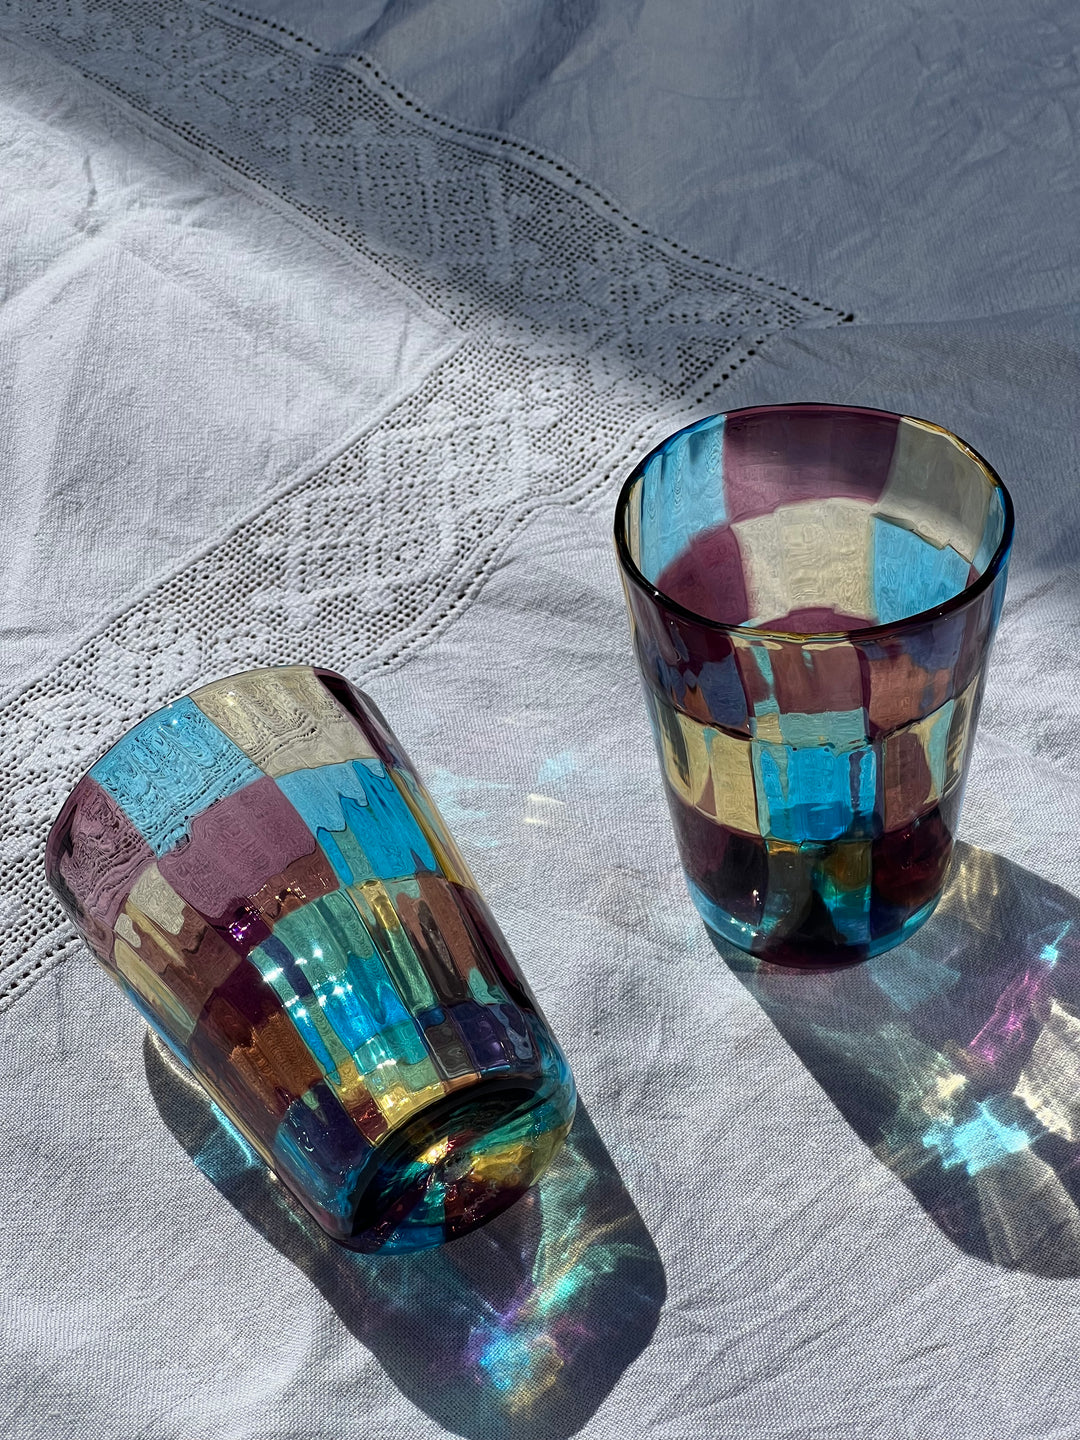 Håndblæst Murano Glas med skaktern i lyseblå, ametyst og lysegul Murano